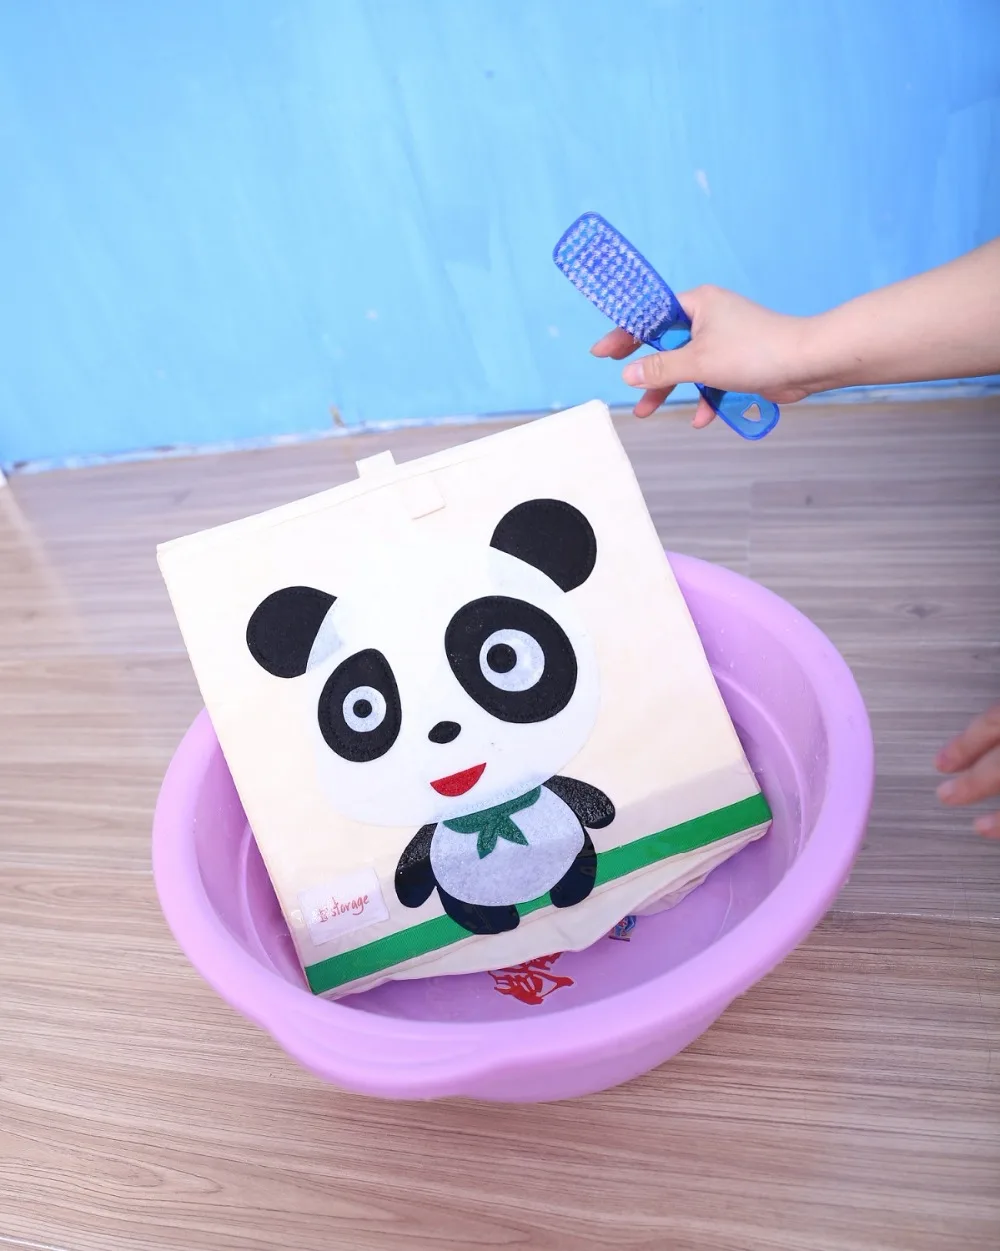 3D мультфильм животных вышивка складной ящик для хранения мыть ткань Оксфорд шкаф сумка для хранения детские игрушки Органайзер 33*33*33 см ящики